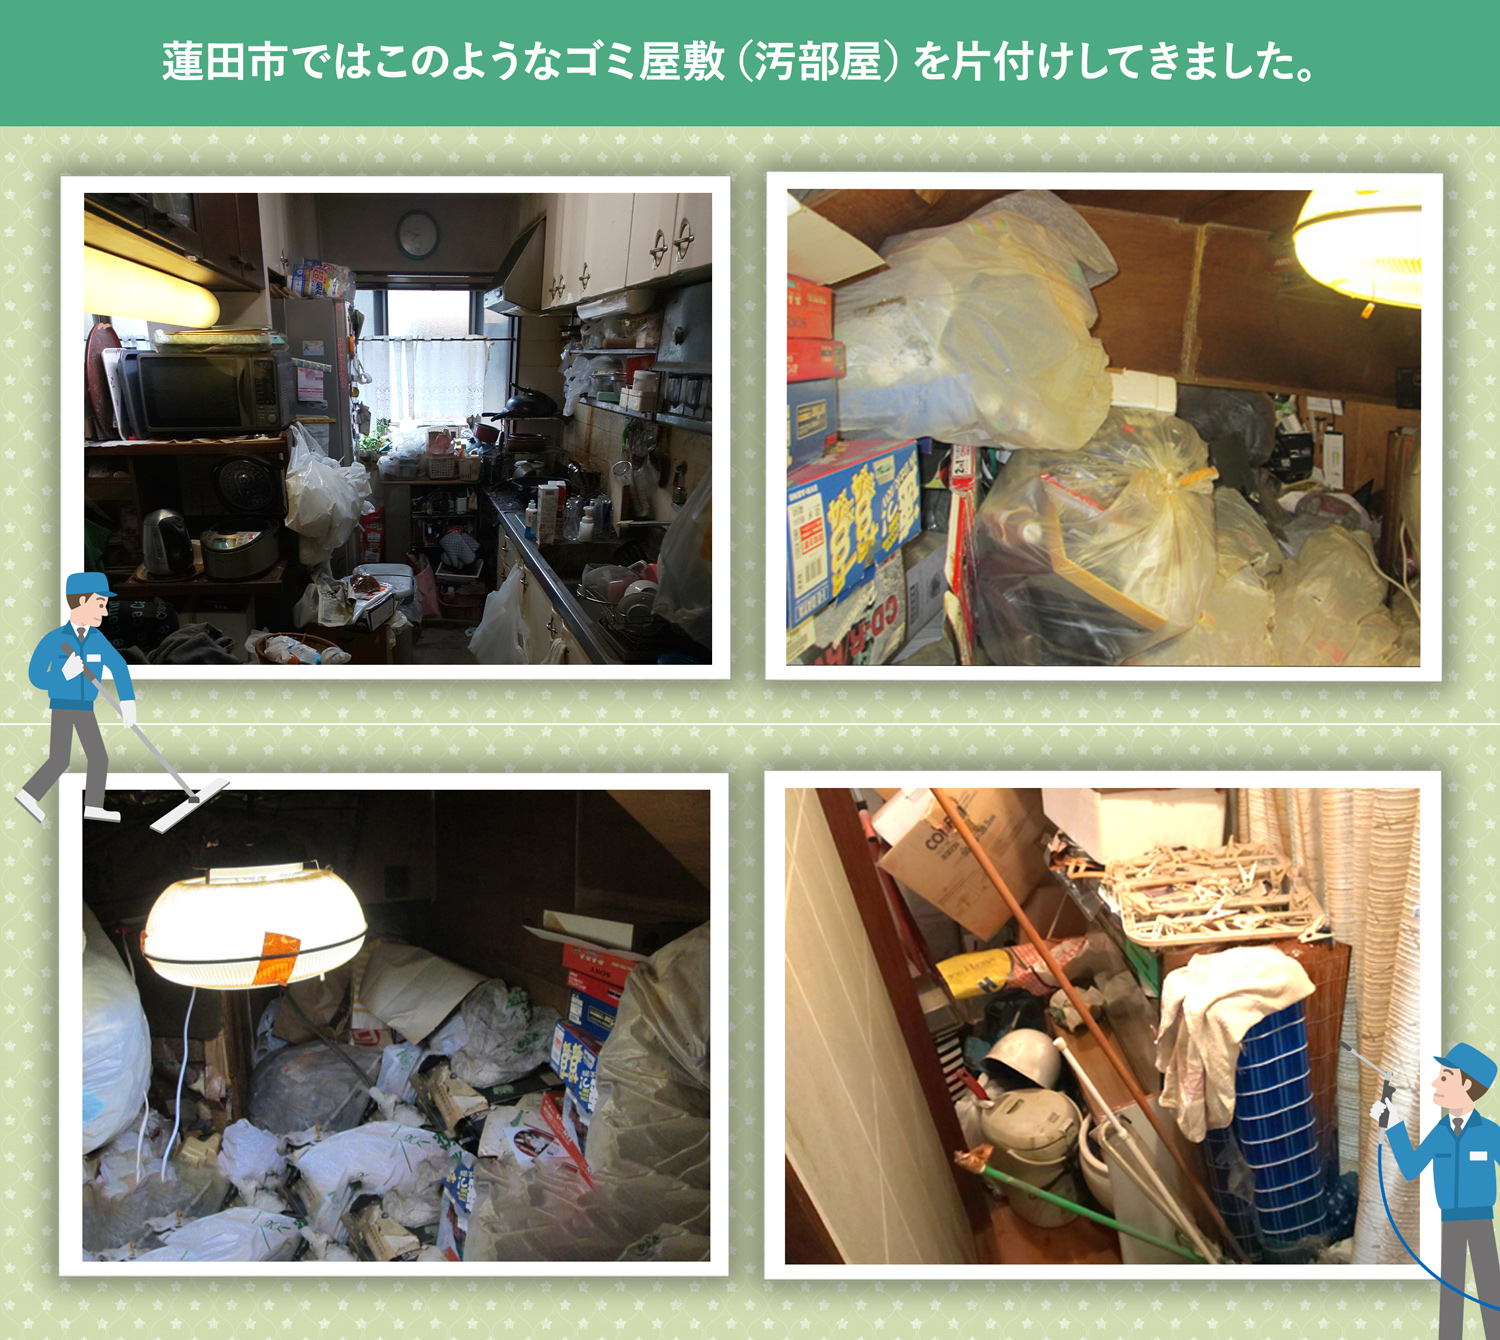 蓮田市で行ったで行ったごみ屋敷・汚部屋の片付けの一例